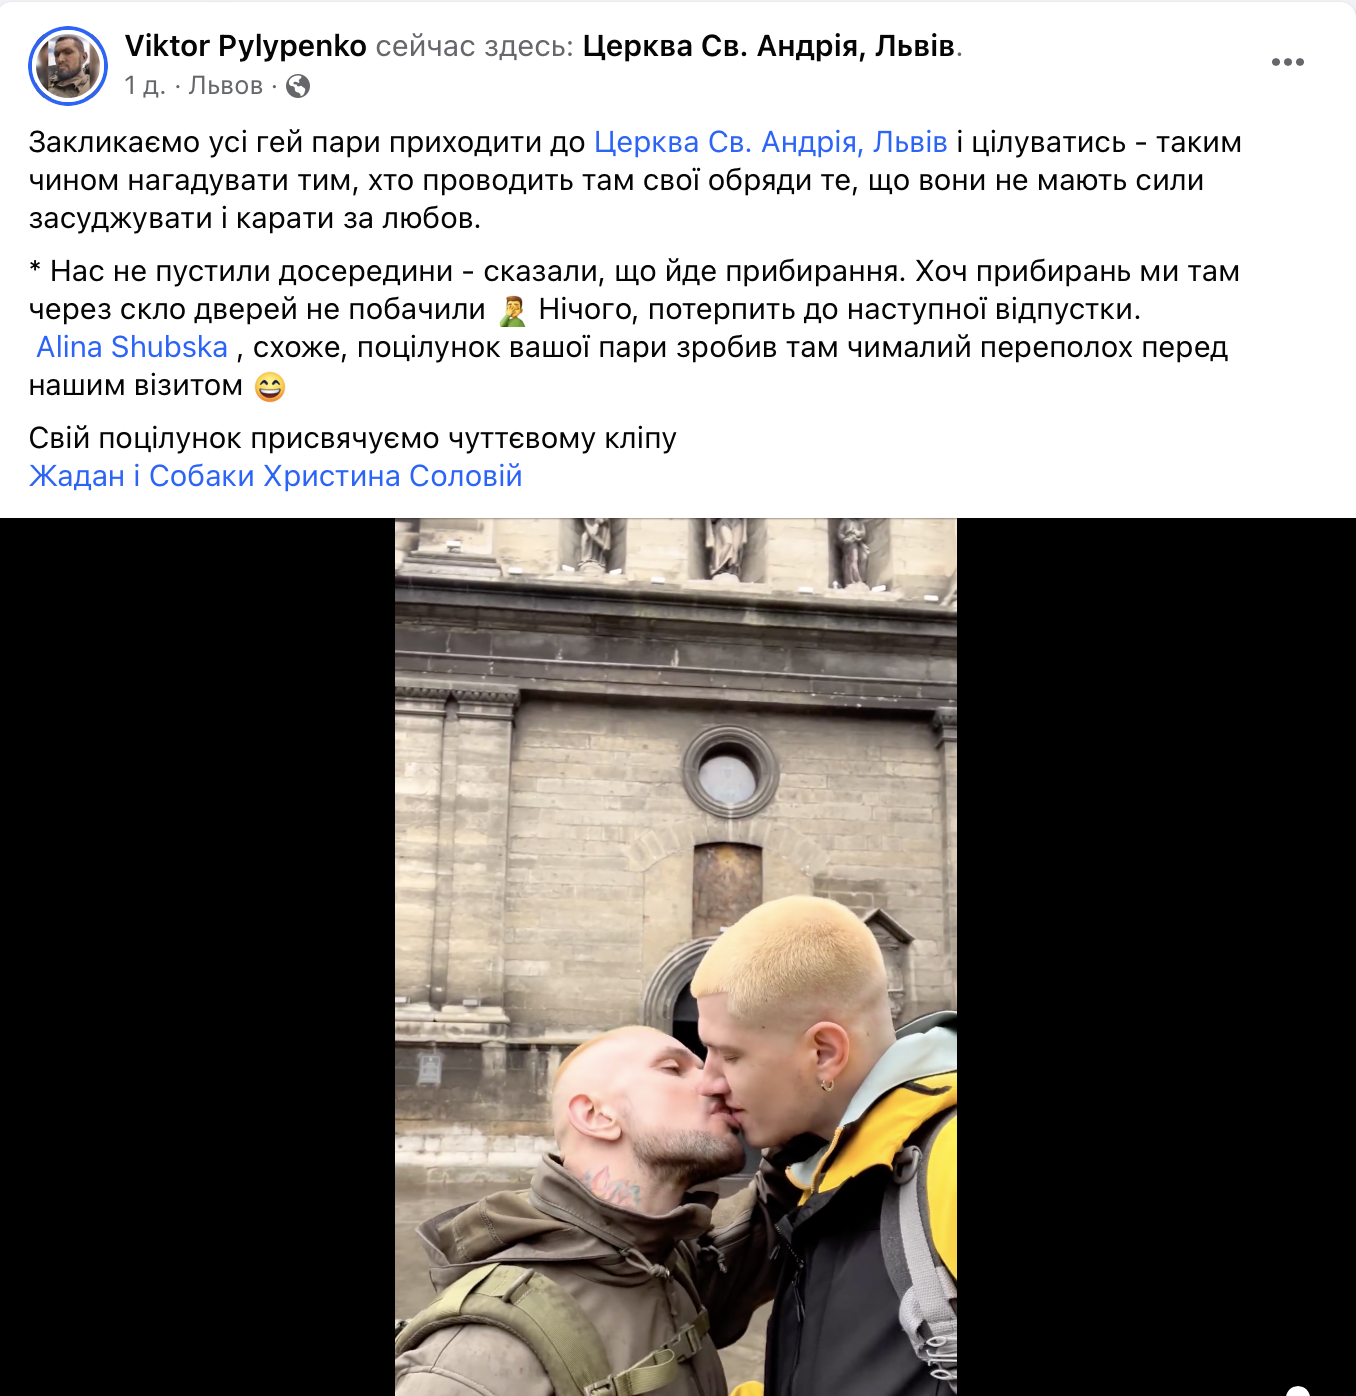 Dwie dziewczyny całowały się we lwowskim kościele po skandalu wokół teledysku Żadana i Sołowij: wspierał je wojskowy LGBT